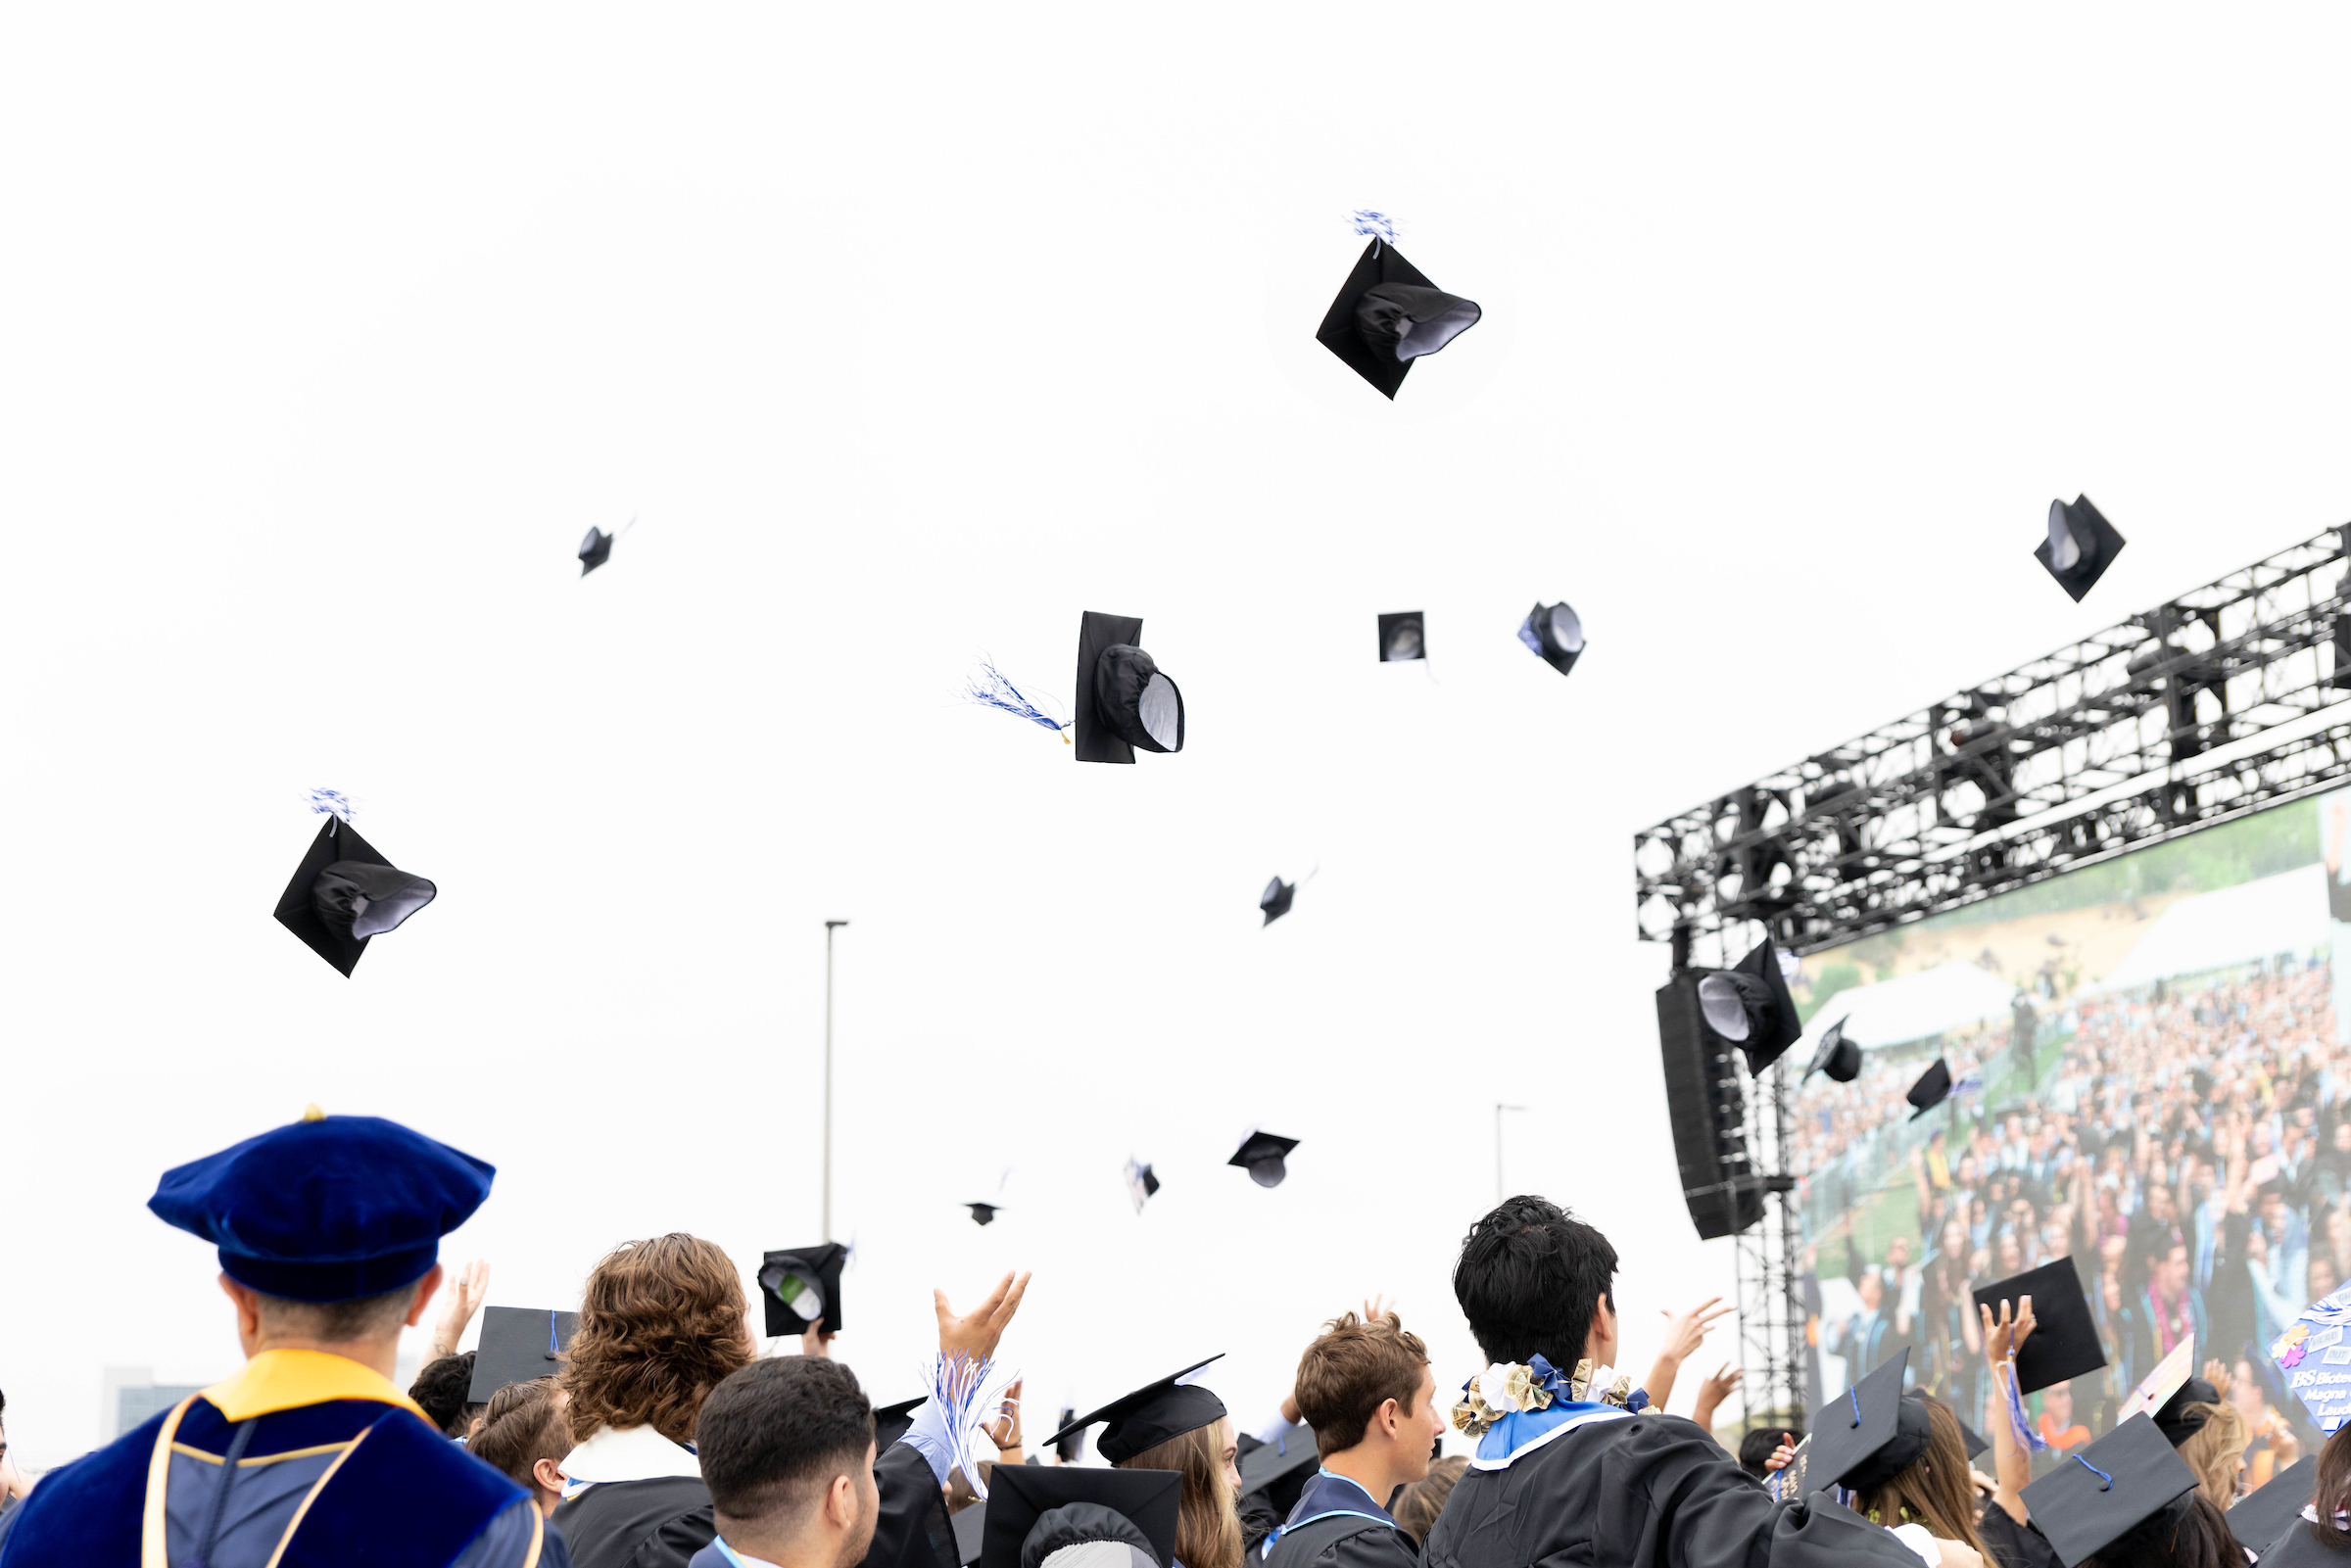 CSUSM graduates tossing caps in air